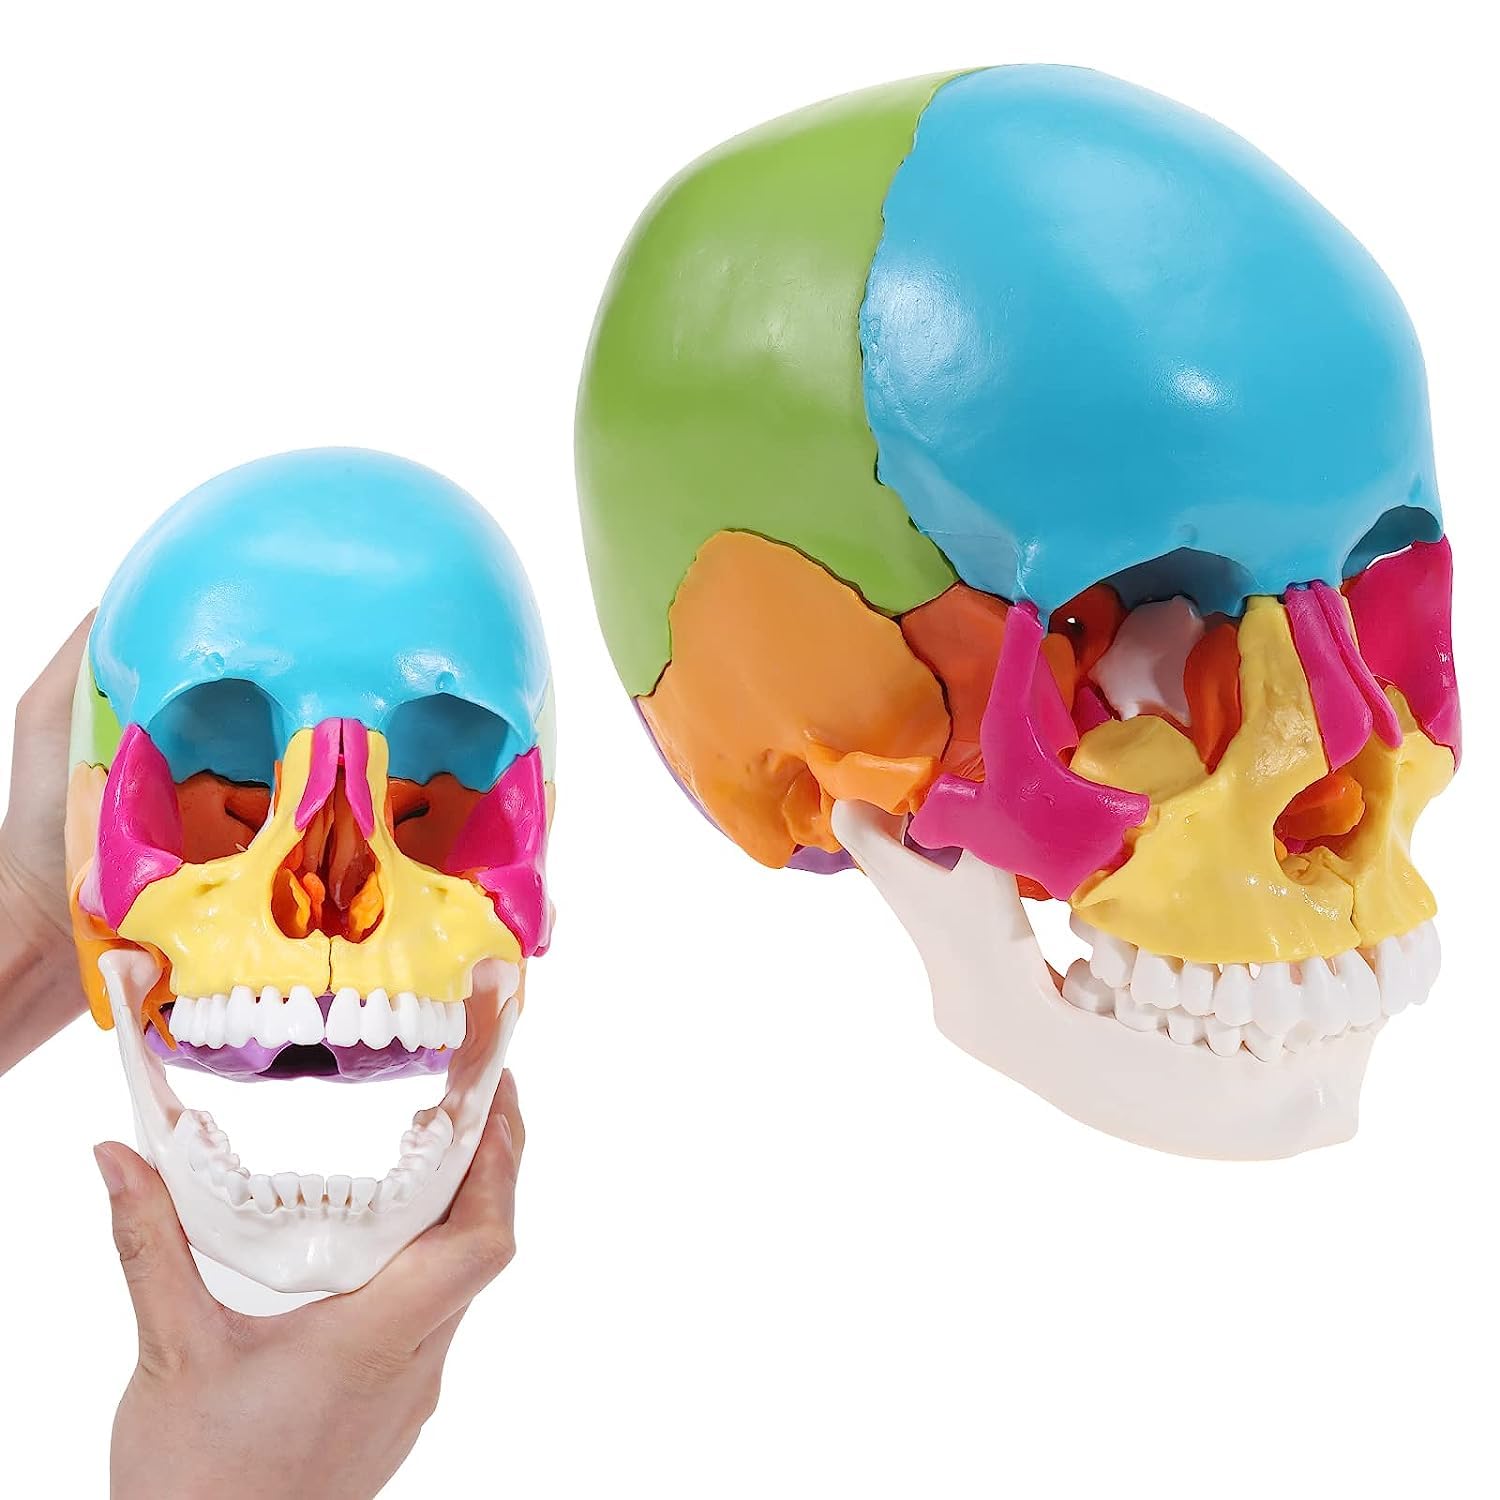 取り外し可能頭蓋骨モデル、医療用カラフルな人間の頭蓋骨モデルには、アセンブリチュートリアルマニュアル、病院、オフィス、学校、大..